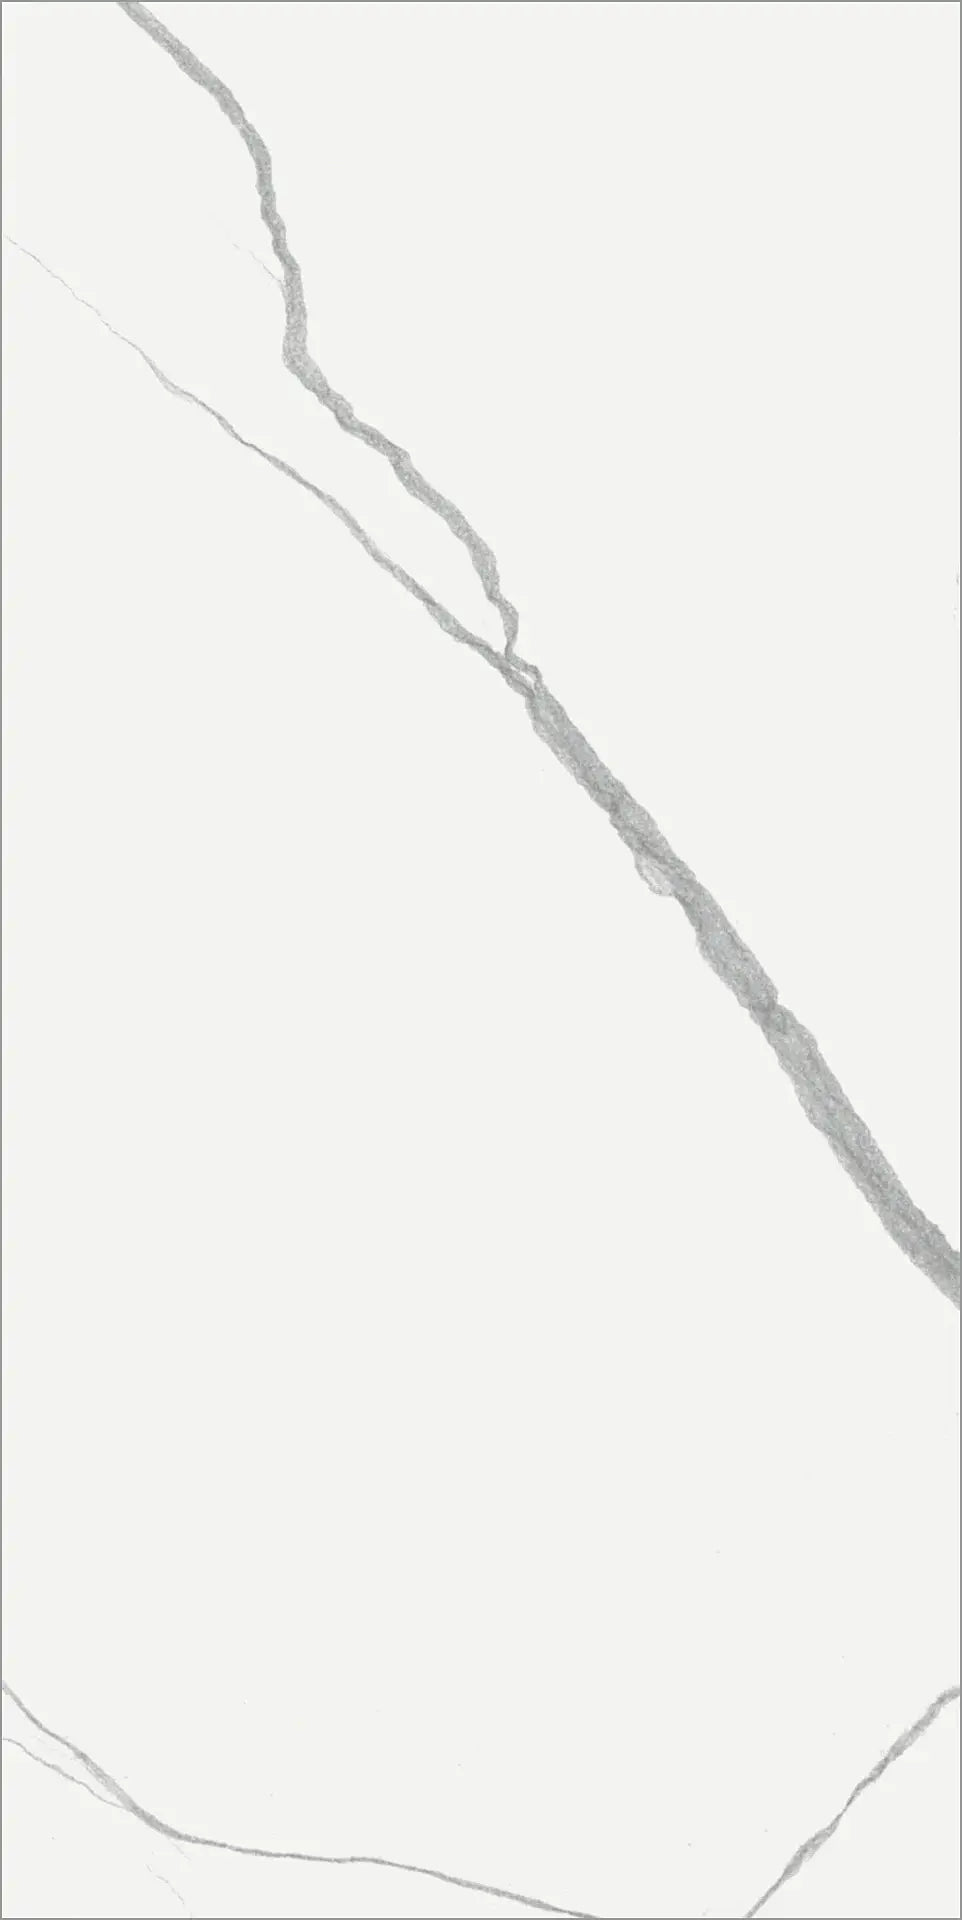 Gresie Mate Marmo Bianco 30x60x0.95 cm 4100108 41zero42